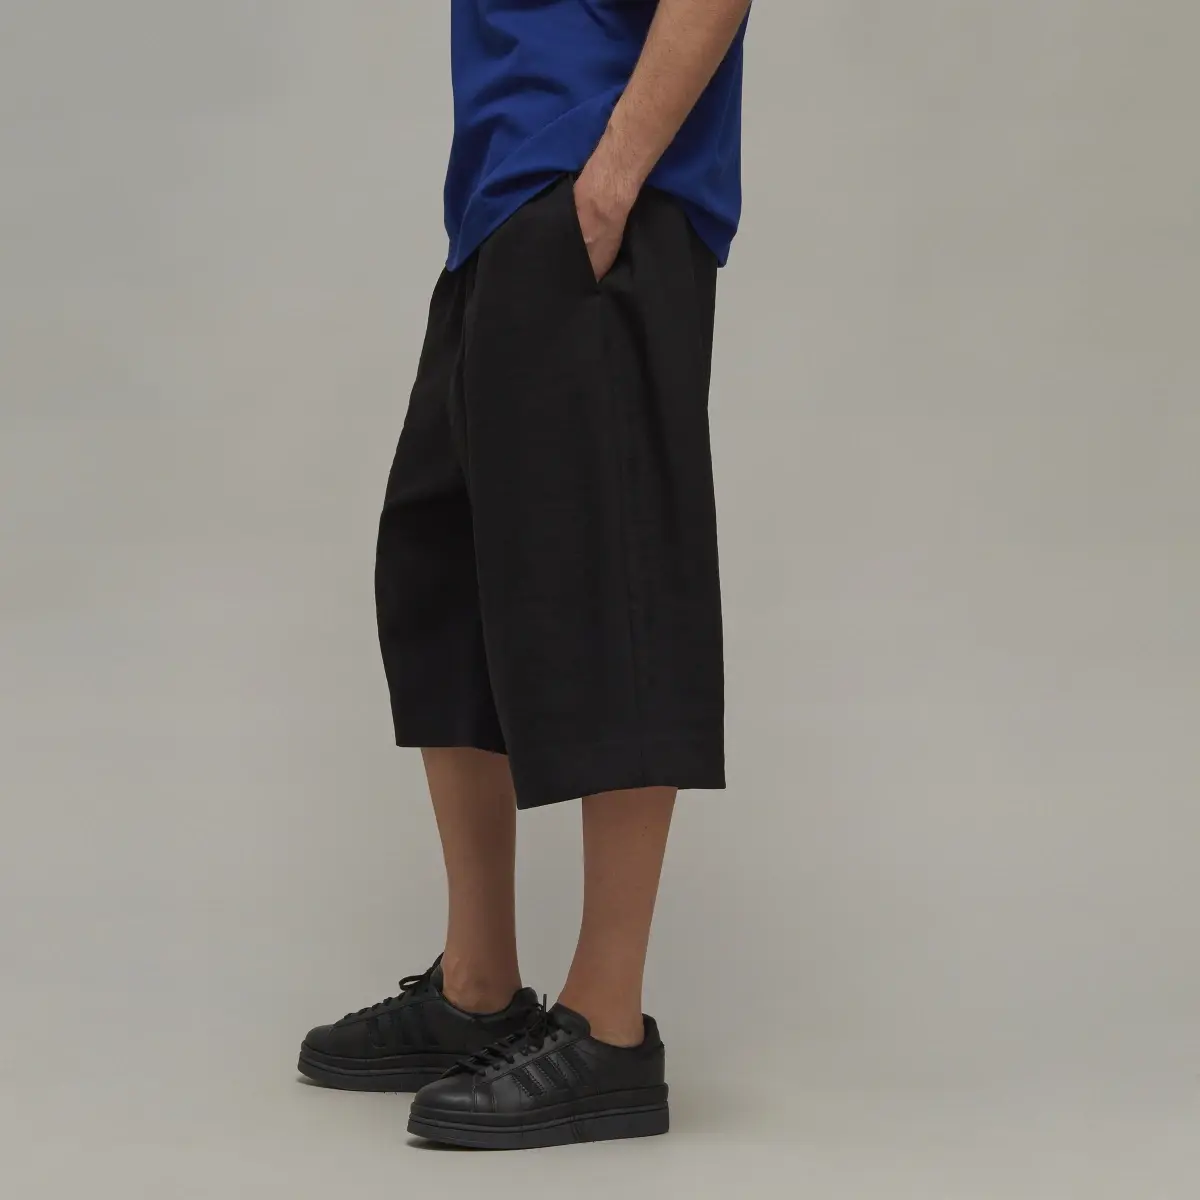 Adidas Y-3 Sport Uniform Shorts. 2